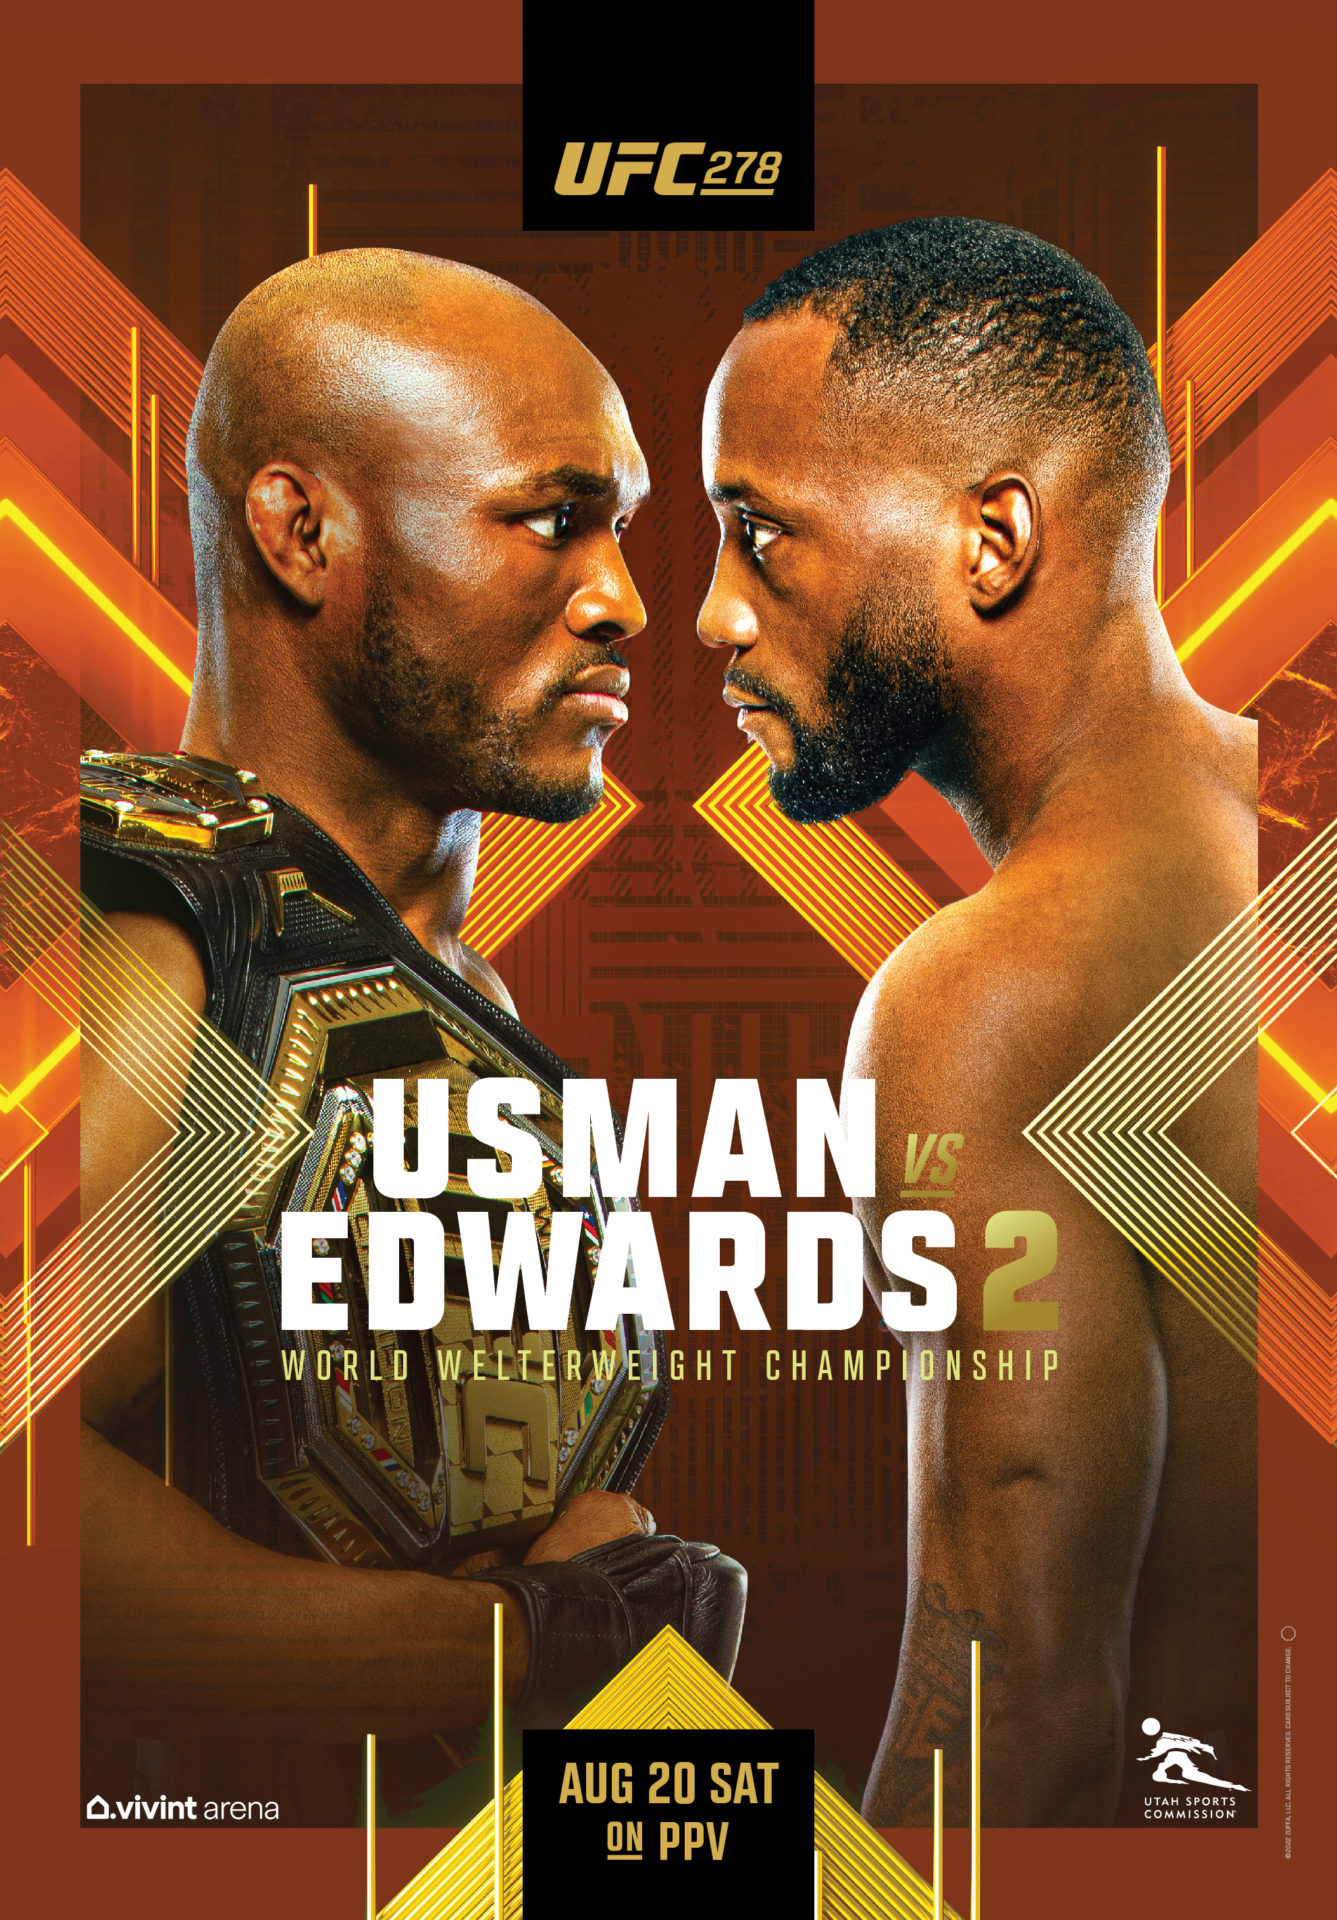 UFC 278 - Usman vs Edwards 2